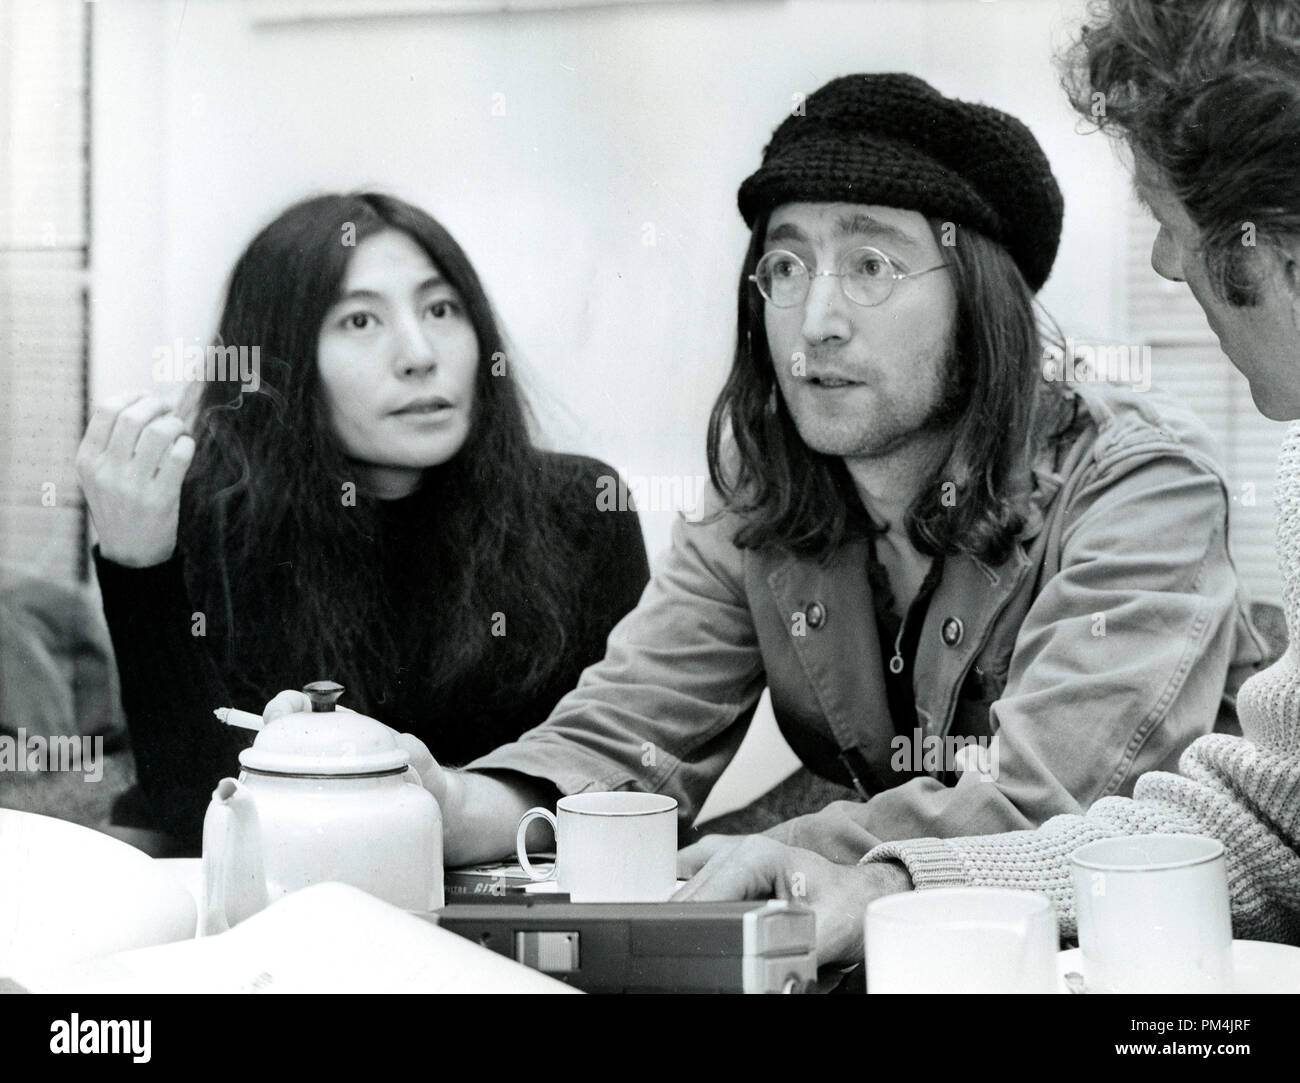 John Lennon et Yoko Ono, novembre1969. Référence # 1013 Fichier 018 THA © CCR /Le Hollywood Archive - Tous droits réservés. Banque D'Images